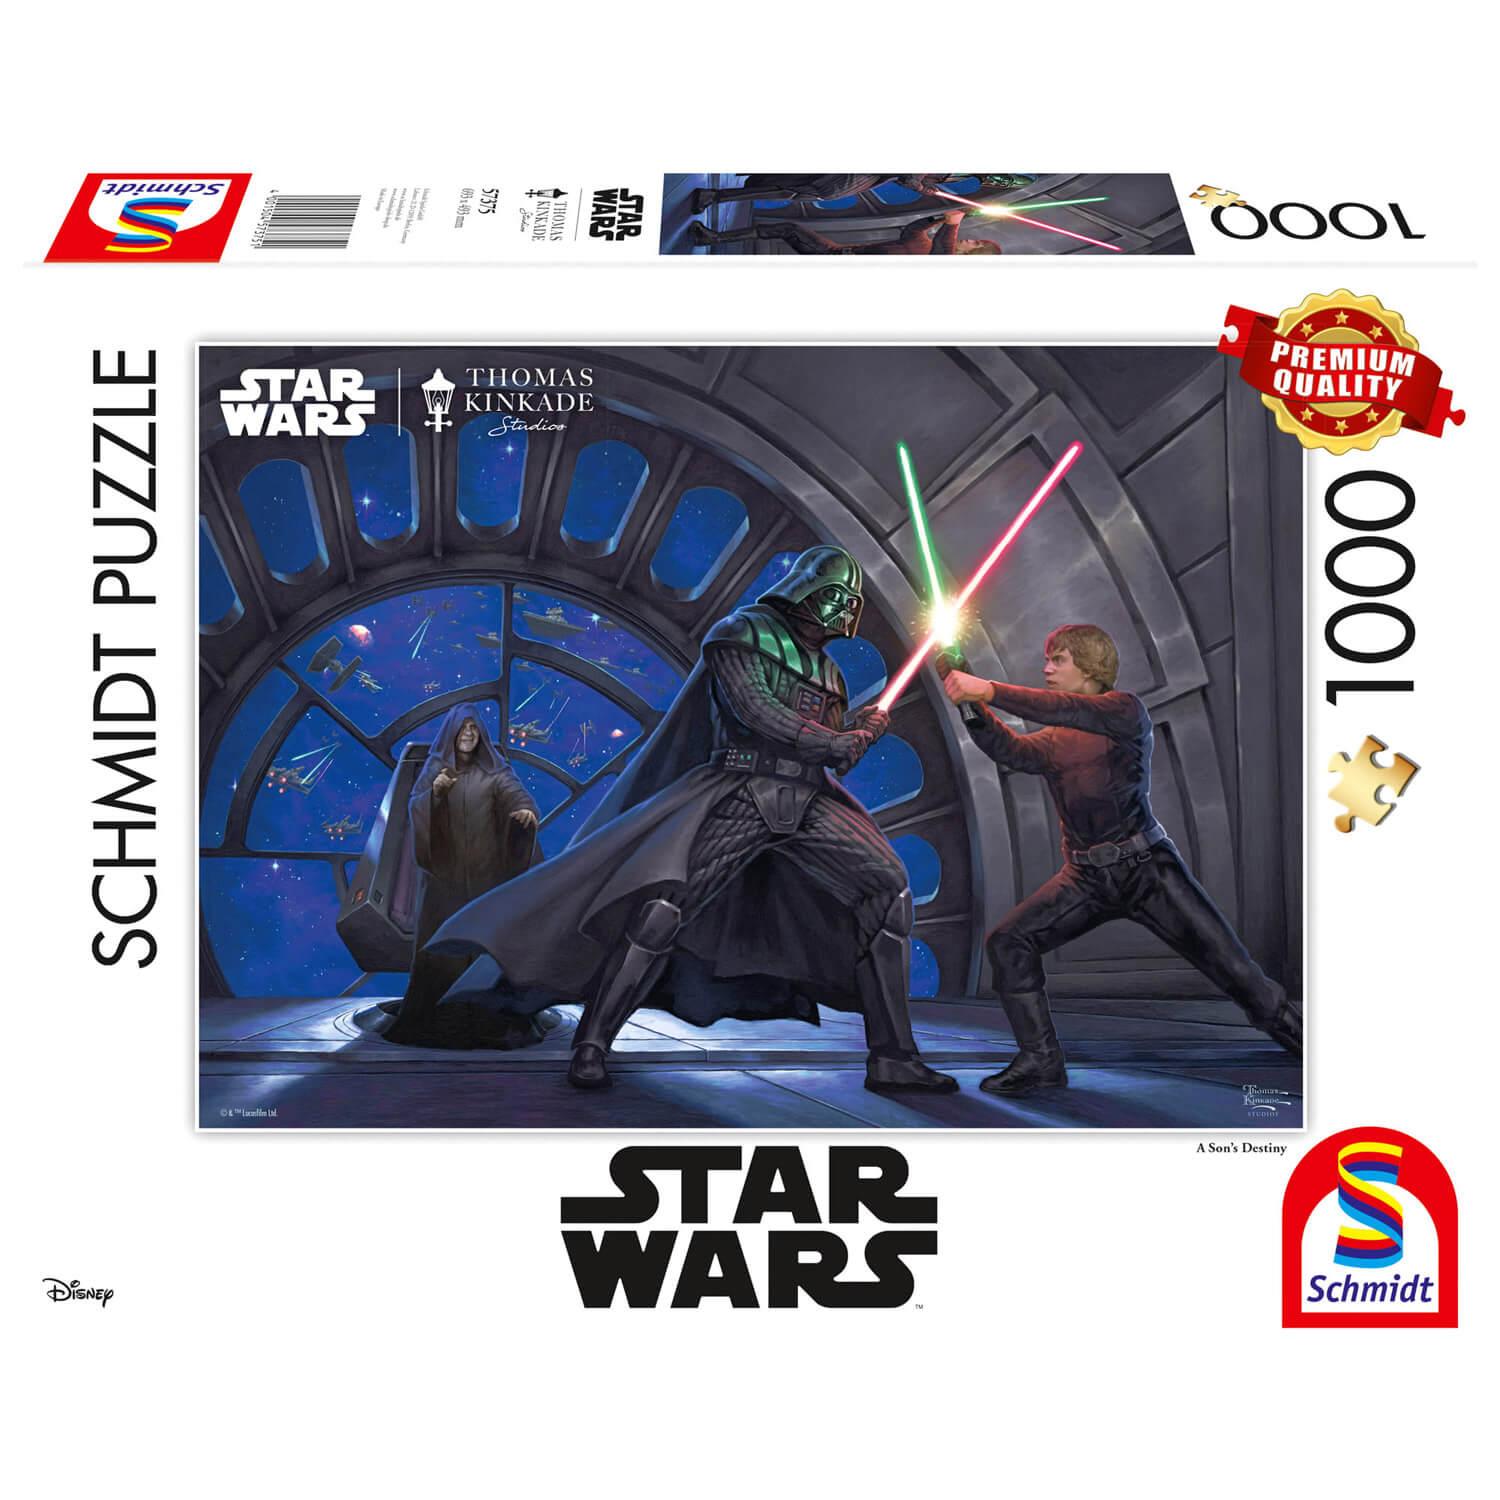 Puzzle 1000 pièces : Star Wars : Le destin d'un fils - Schmidt - Rue des  Puzzles